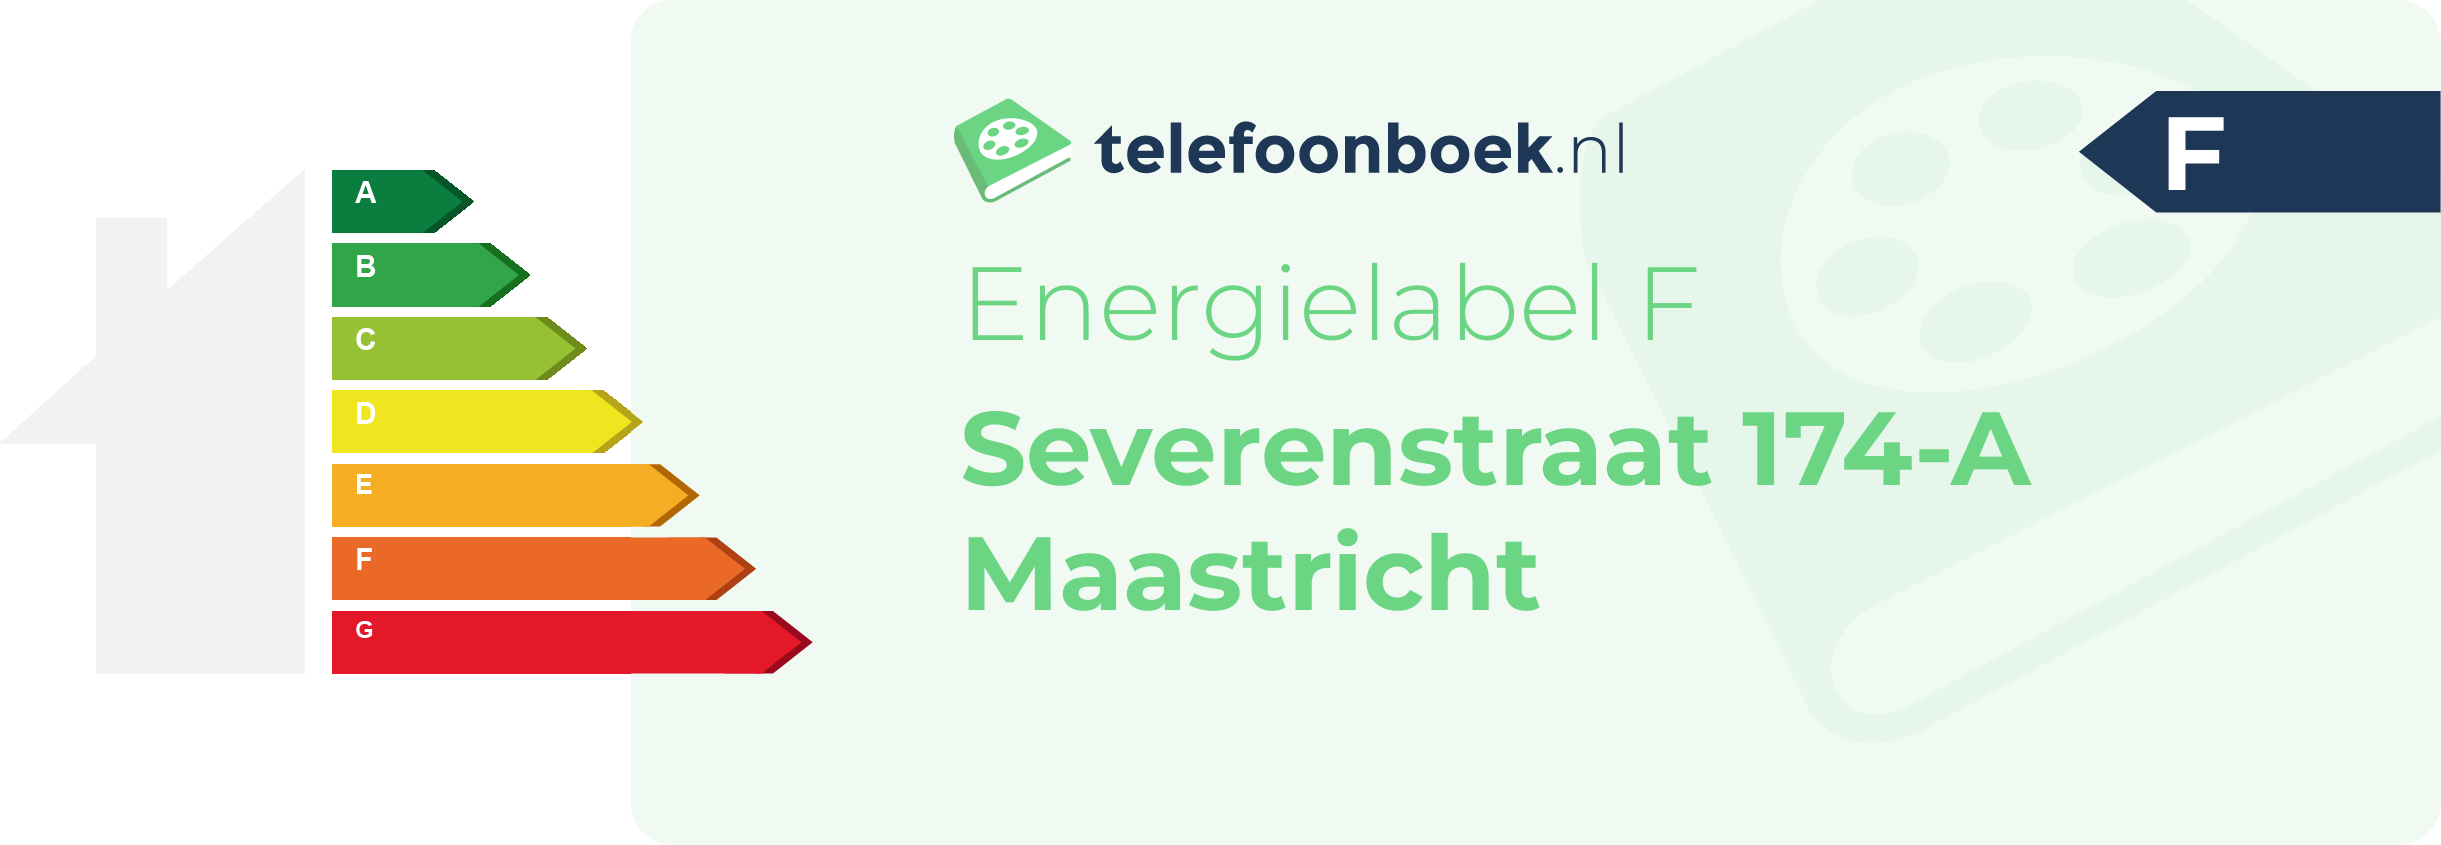 Energielabel Severenstraat 174-A Maastricht